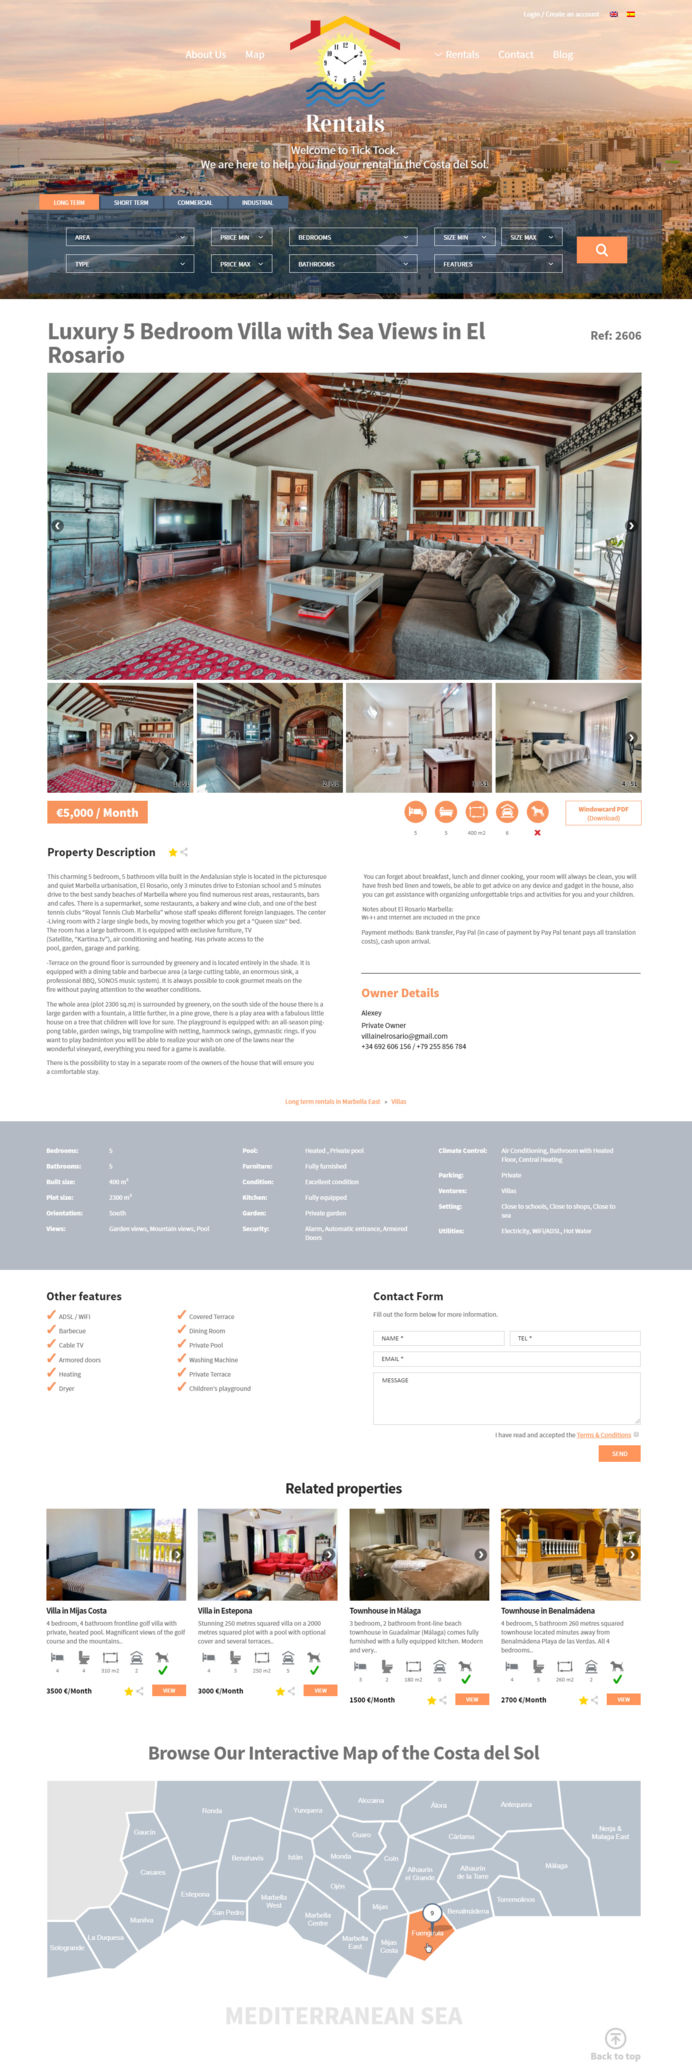 Diseño de página inmobiliaria TickTock Rent, especialista en alquileres en la Costa del Sol